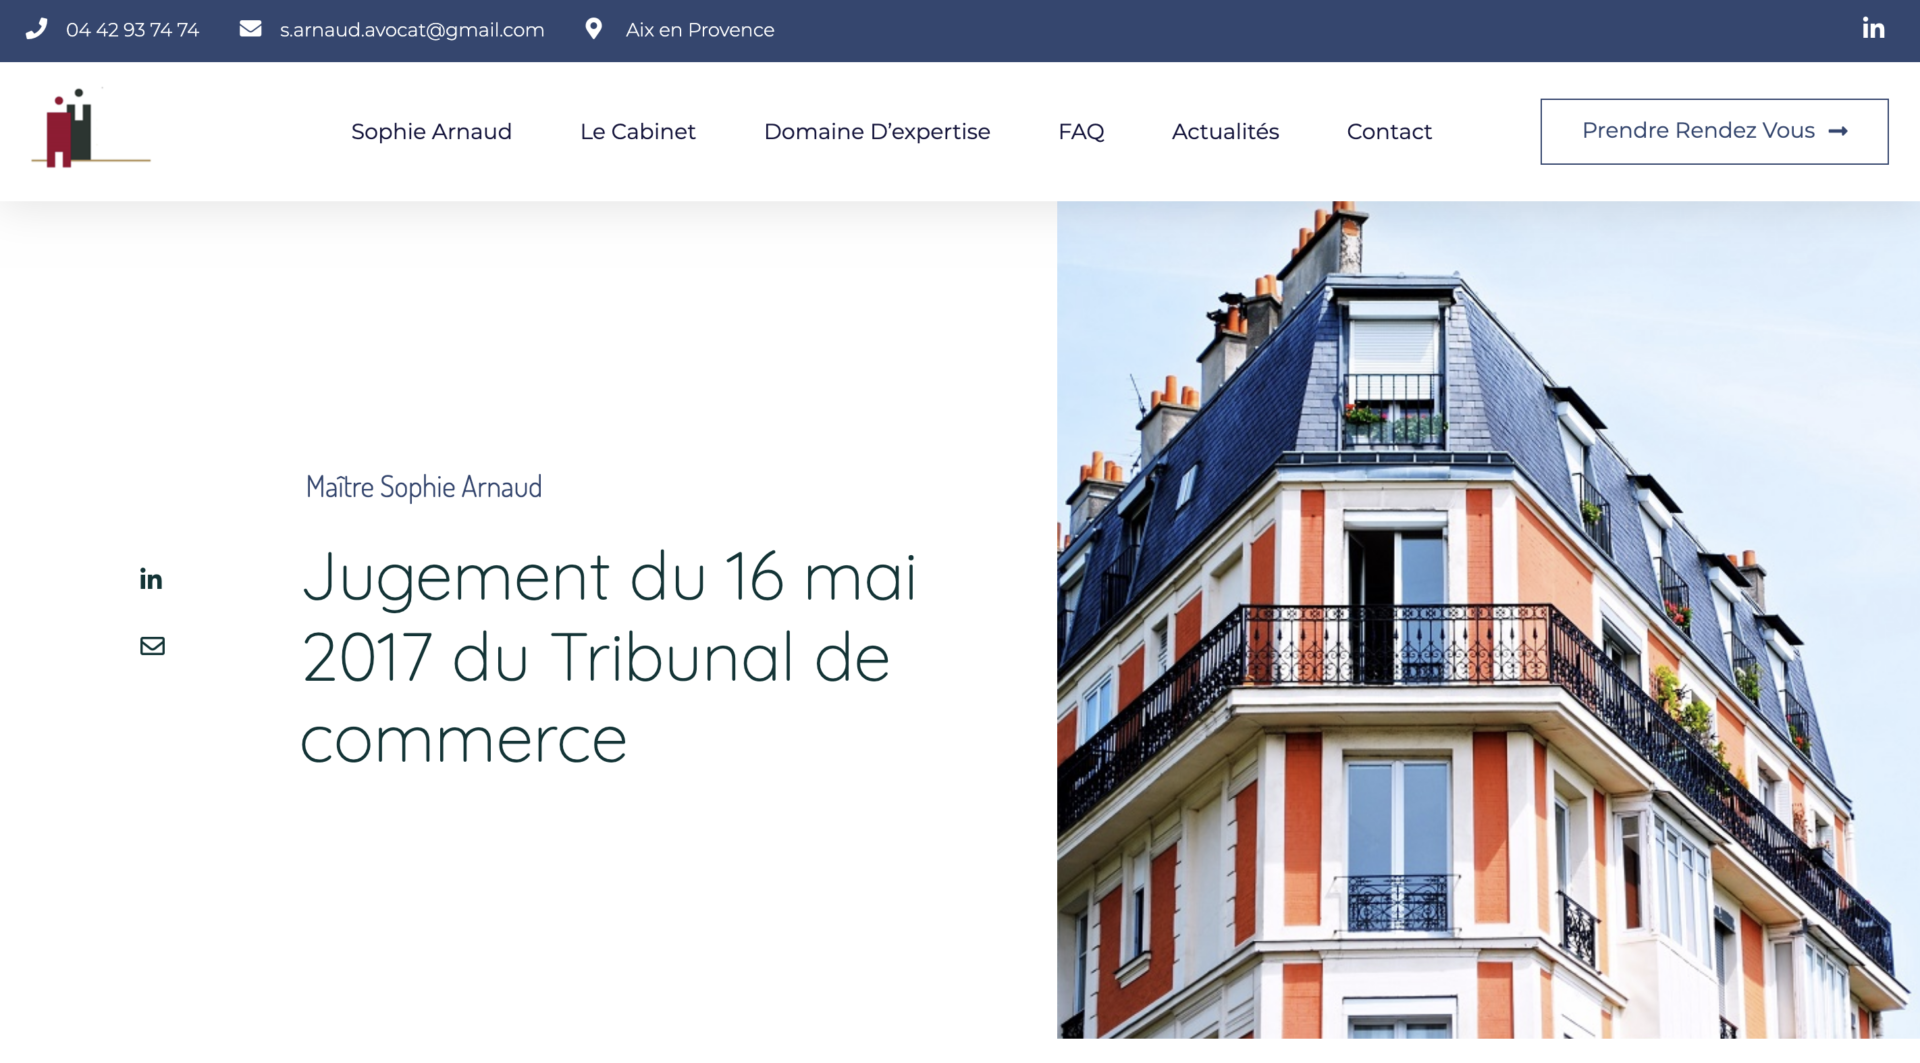 Création site internet Avocat - Aix en Provence Geoffrey Leduc